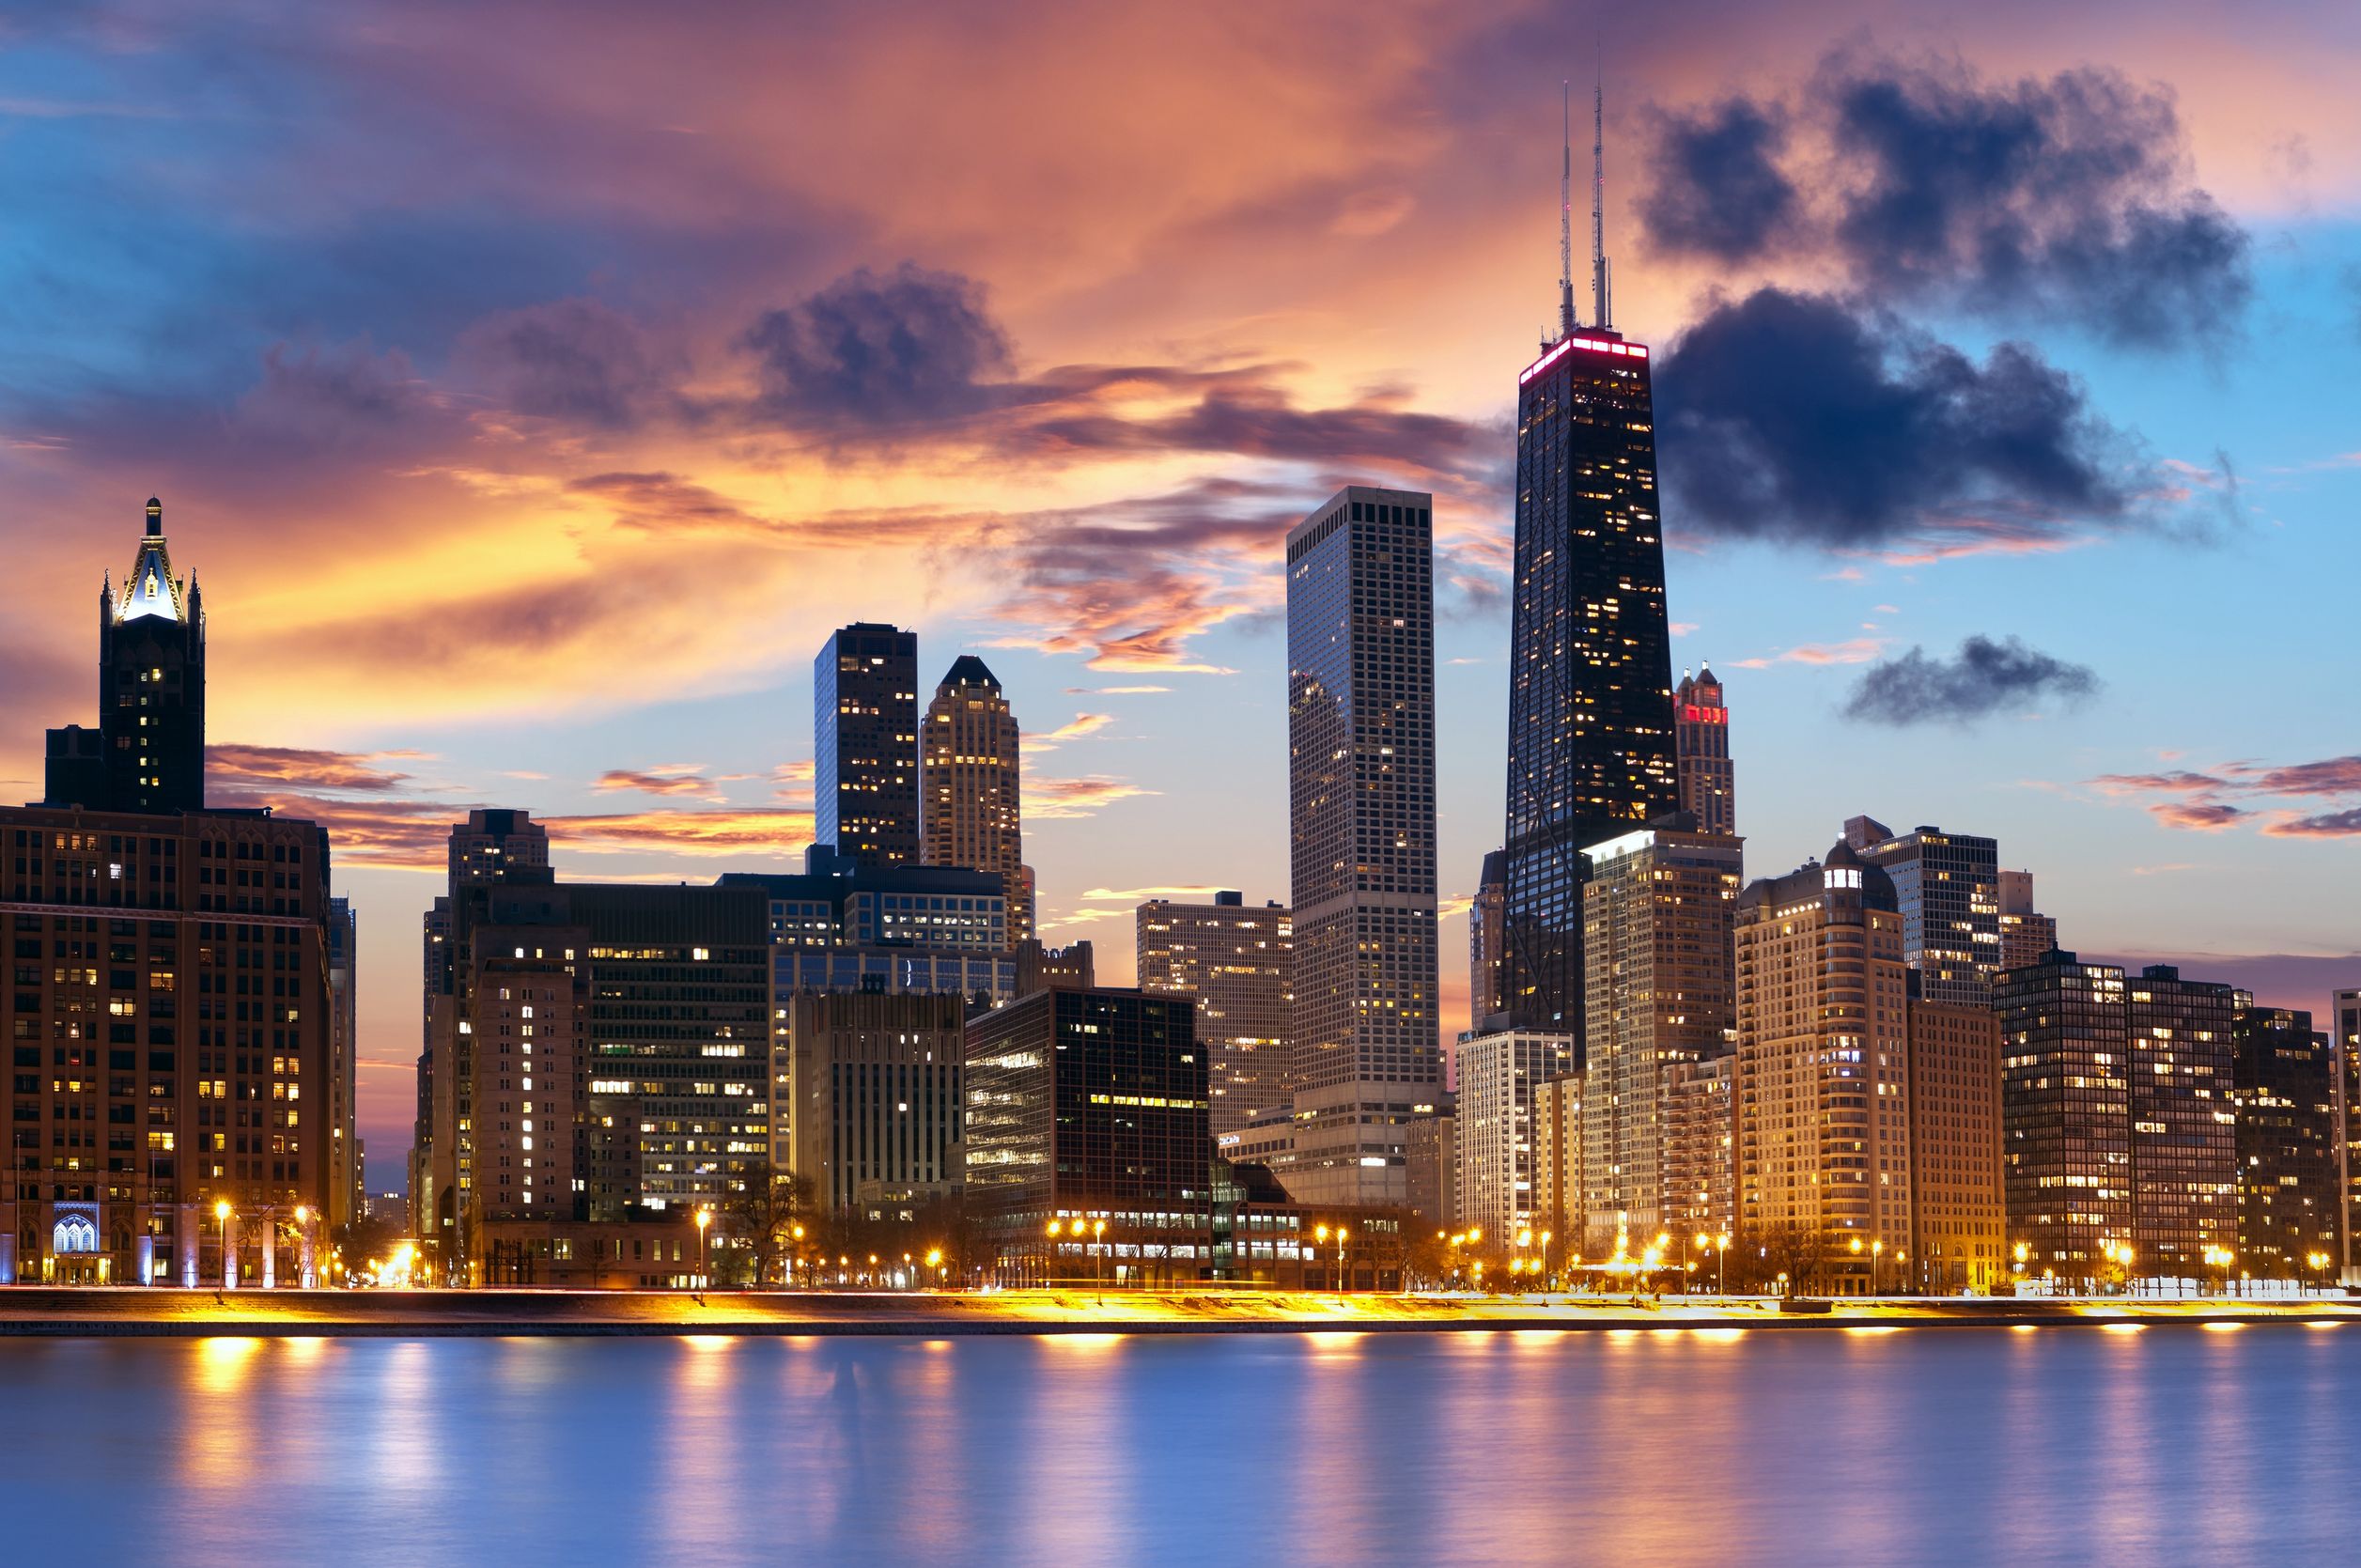 Chicago-Skyline via layoverguide.com